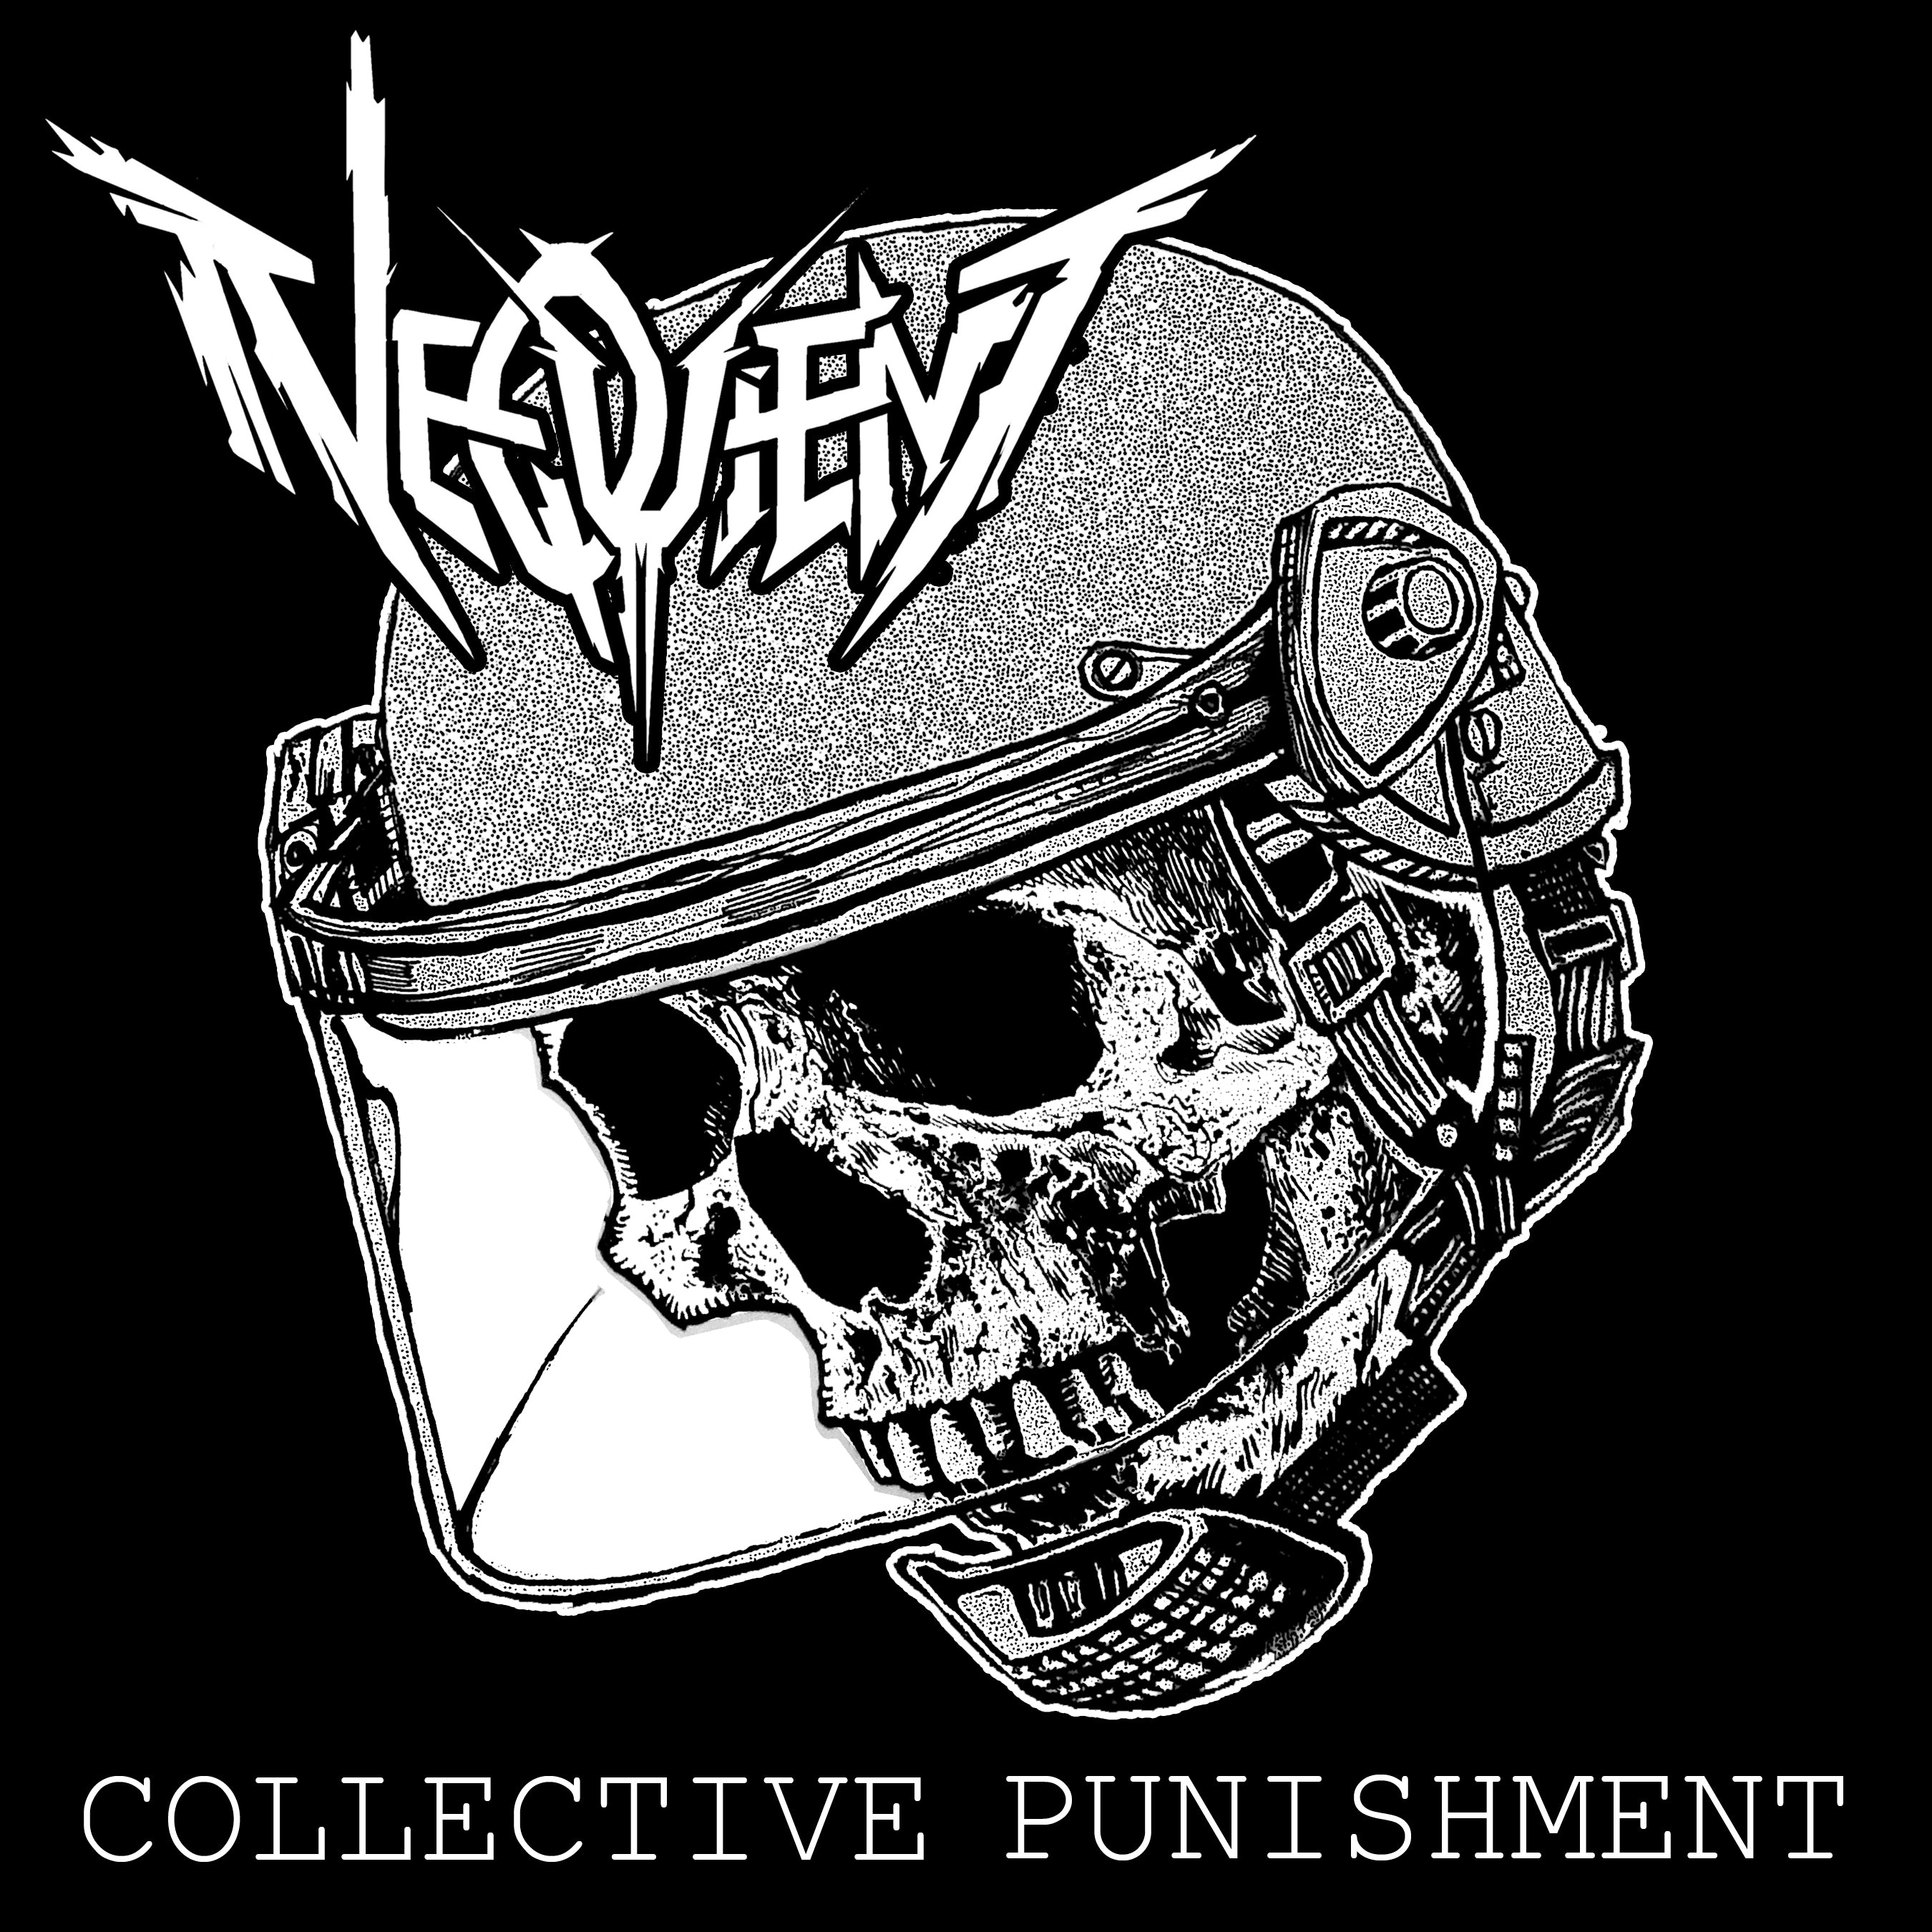 NEQUIENT - Collective Punishment